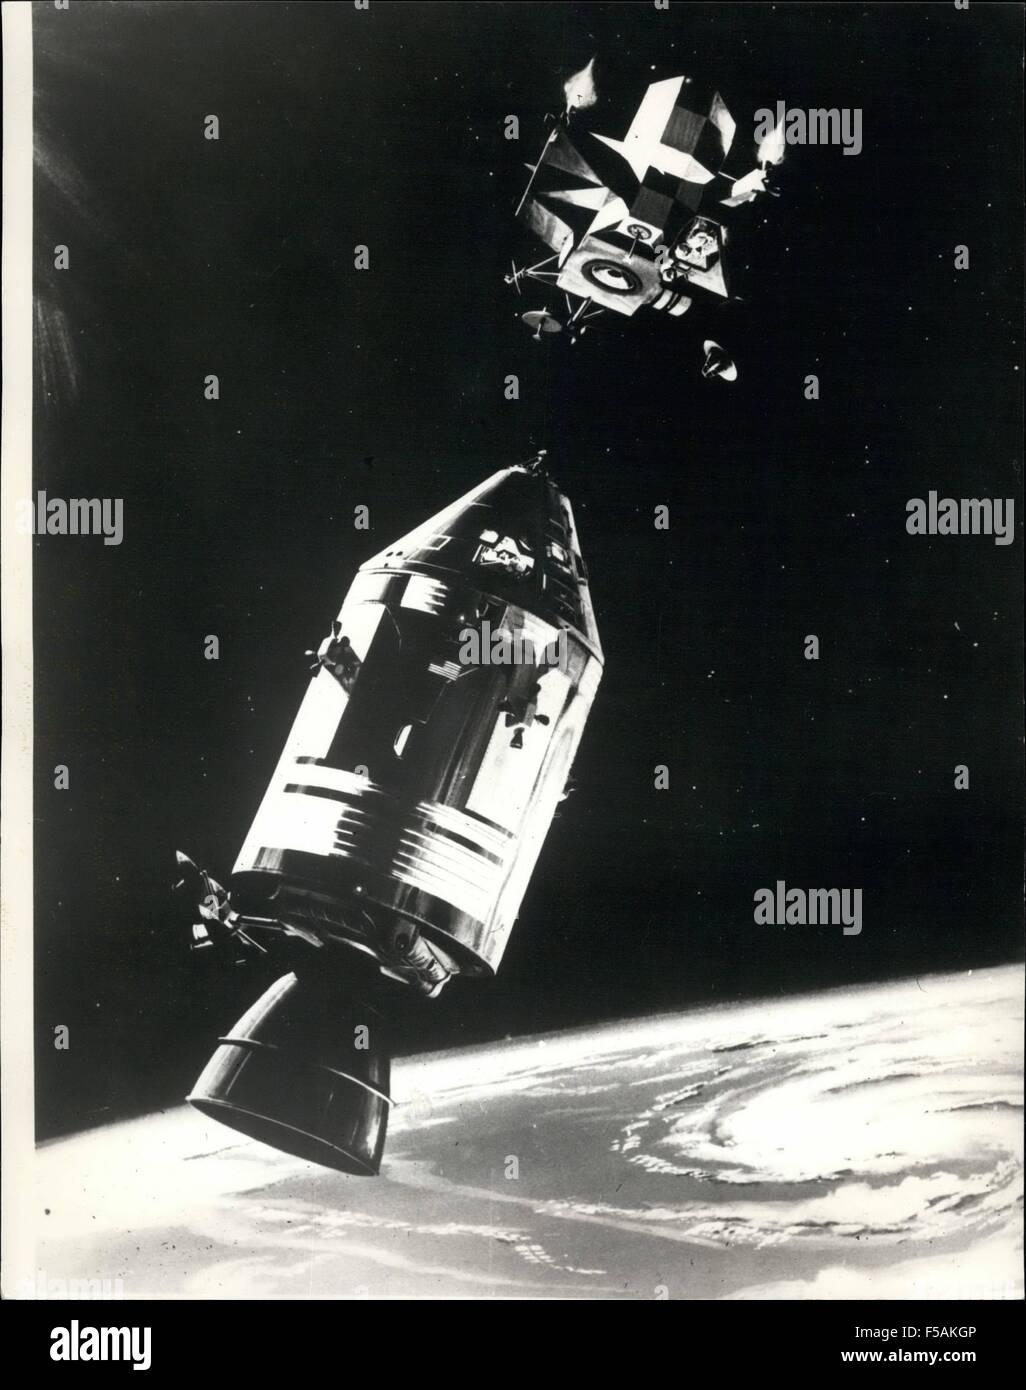 Juli 1969 - set Apollo Crew alle gehen; Die Apollo 9 Raumfahrt sieht ganz eingestellt, um heute - nehmen Sie die drei Astronauten. James Mcdivitt, David Scott und Russell Schweikart gesehen, um ihre Erkältung abgeschüttelt haben. Foto zeigt diese Zeichnung zeigt das Raumschiff Apollo 9 Befehl und service wird in Position gehalten von Astronauten David Scott, wie Lunar Module Pilot Russel Schweikart Aufstieg Stadium der LM, das erste bemannte Rendezvous Manöver und Docking-Module ca. 150 Meilen über der Oberfläche der Erde. Dies ist, wie es in den eigentlichen Mondlandung Flug geplant für irgendwann im Ju gemacht werden Stockfoto